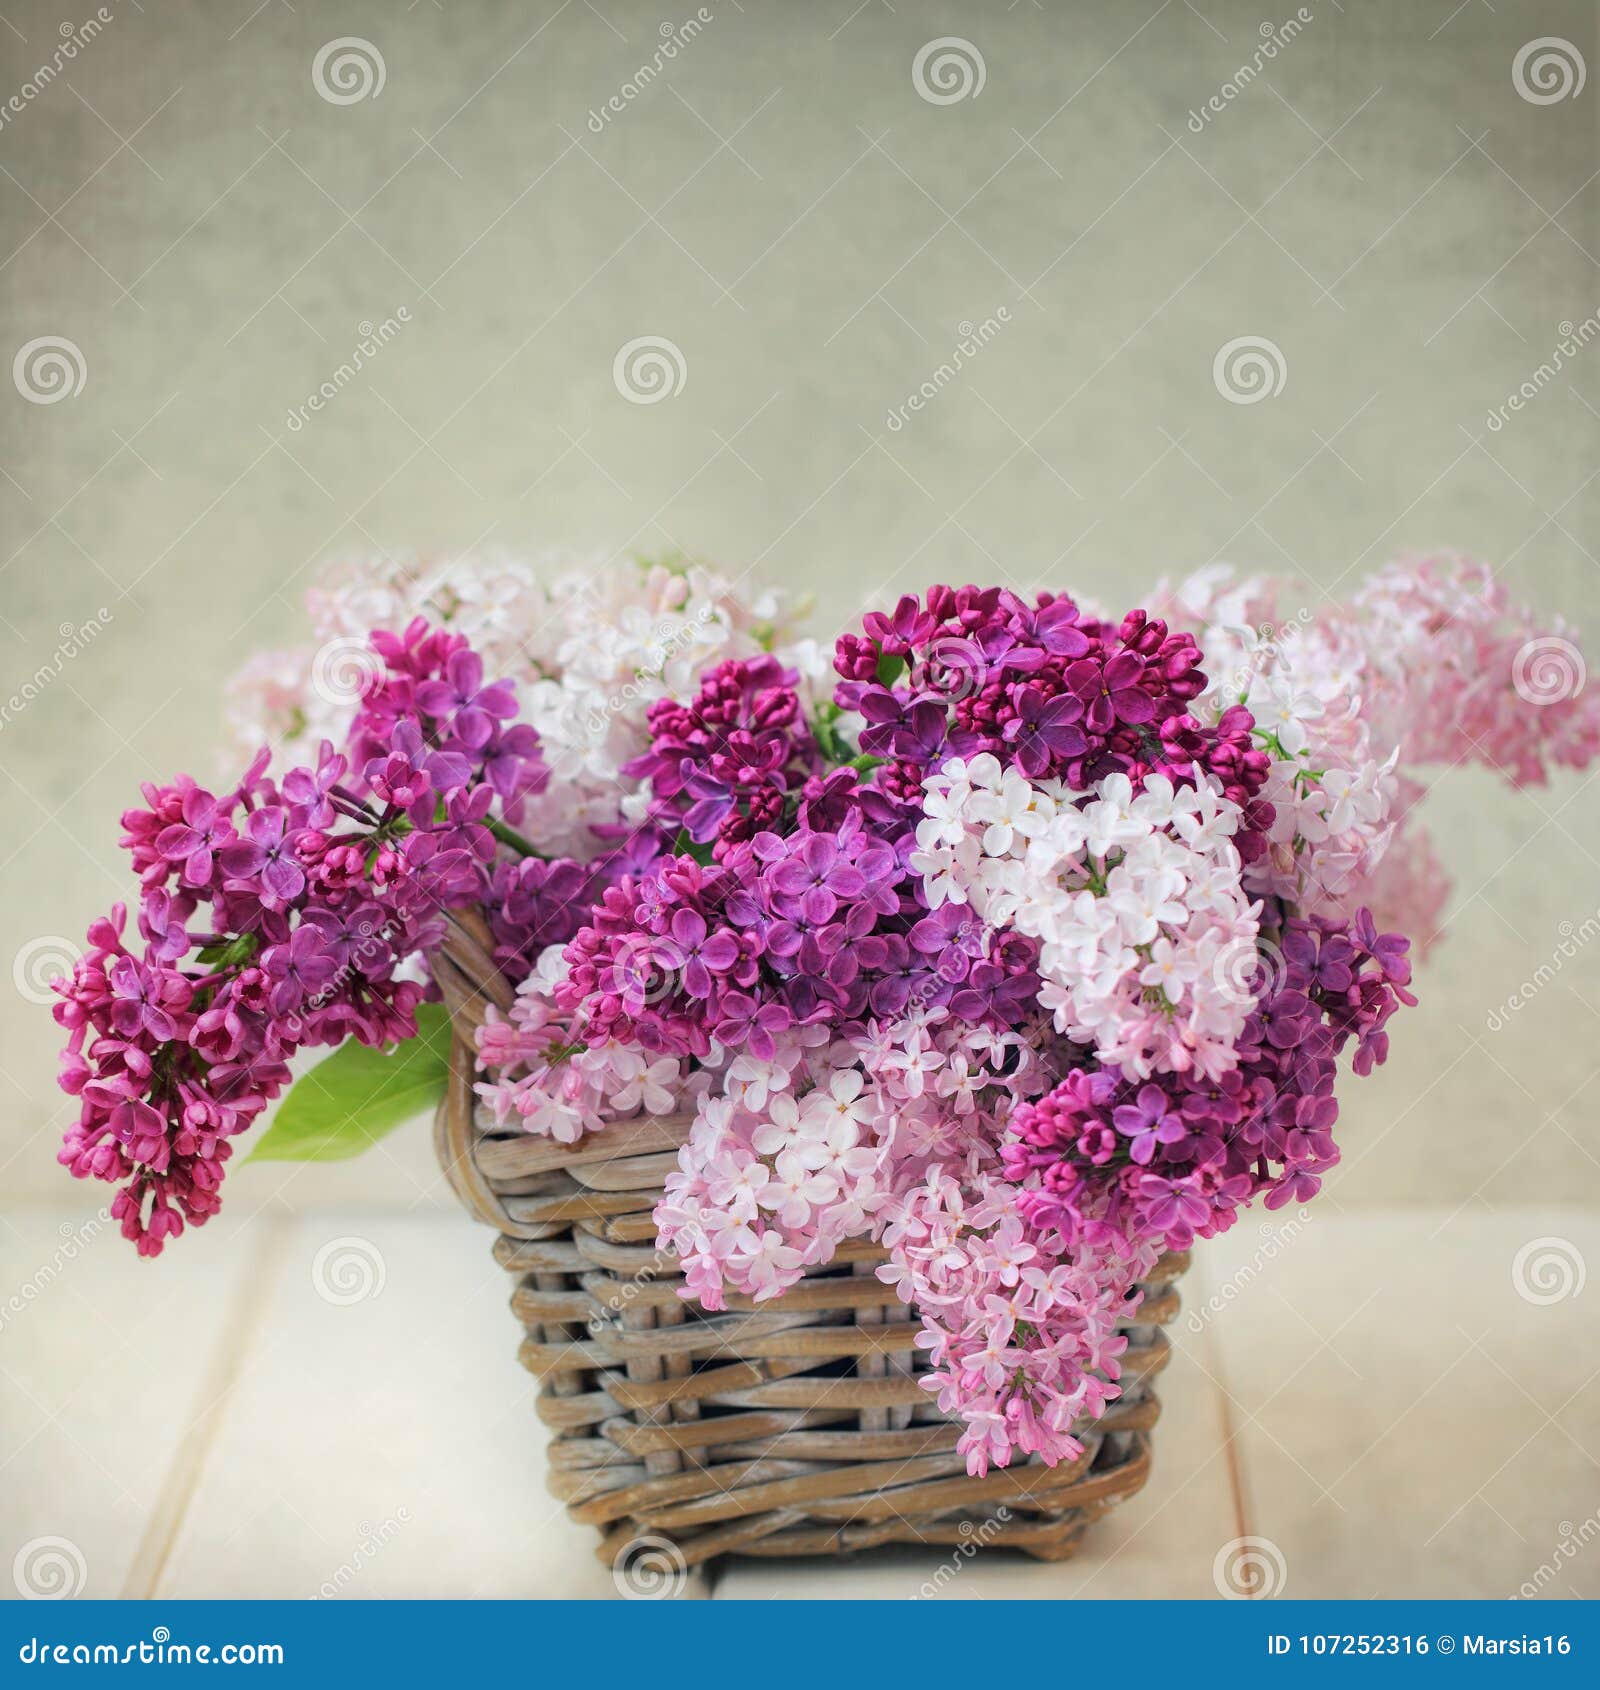 vintage lilac flowers bouquet in wisker basket